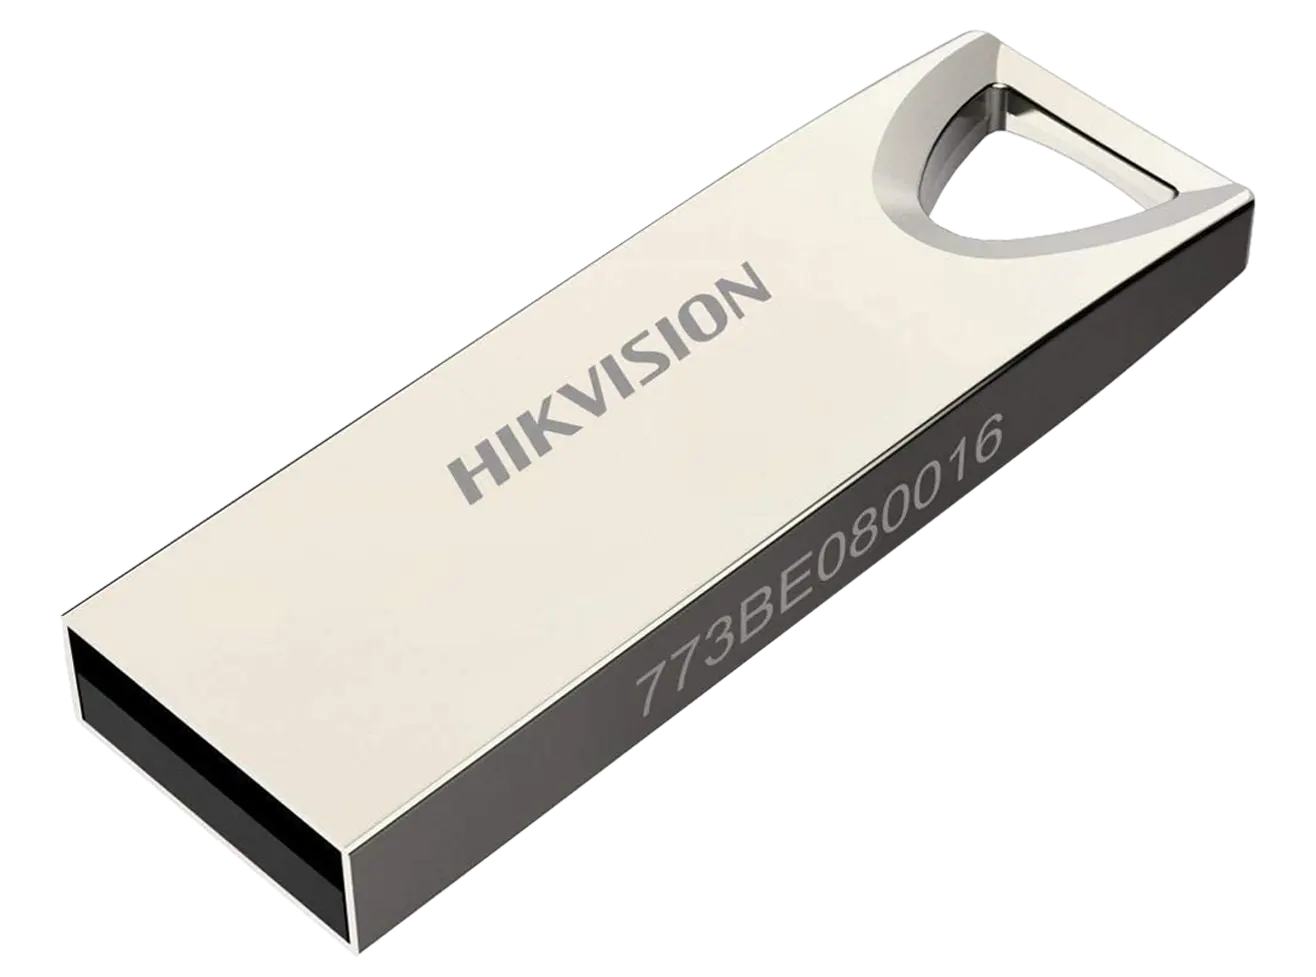 Hikvision M200 Flash Memory, 64 GB, USB 2.0, Silver, HS-USB-M200 (STD) - 64G